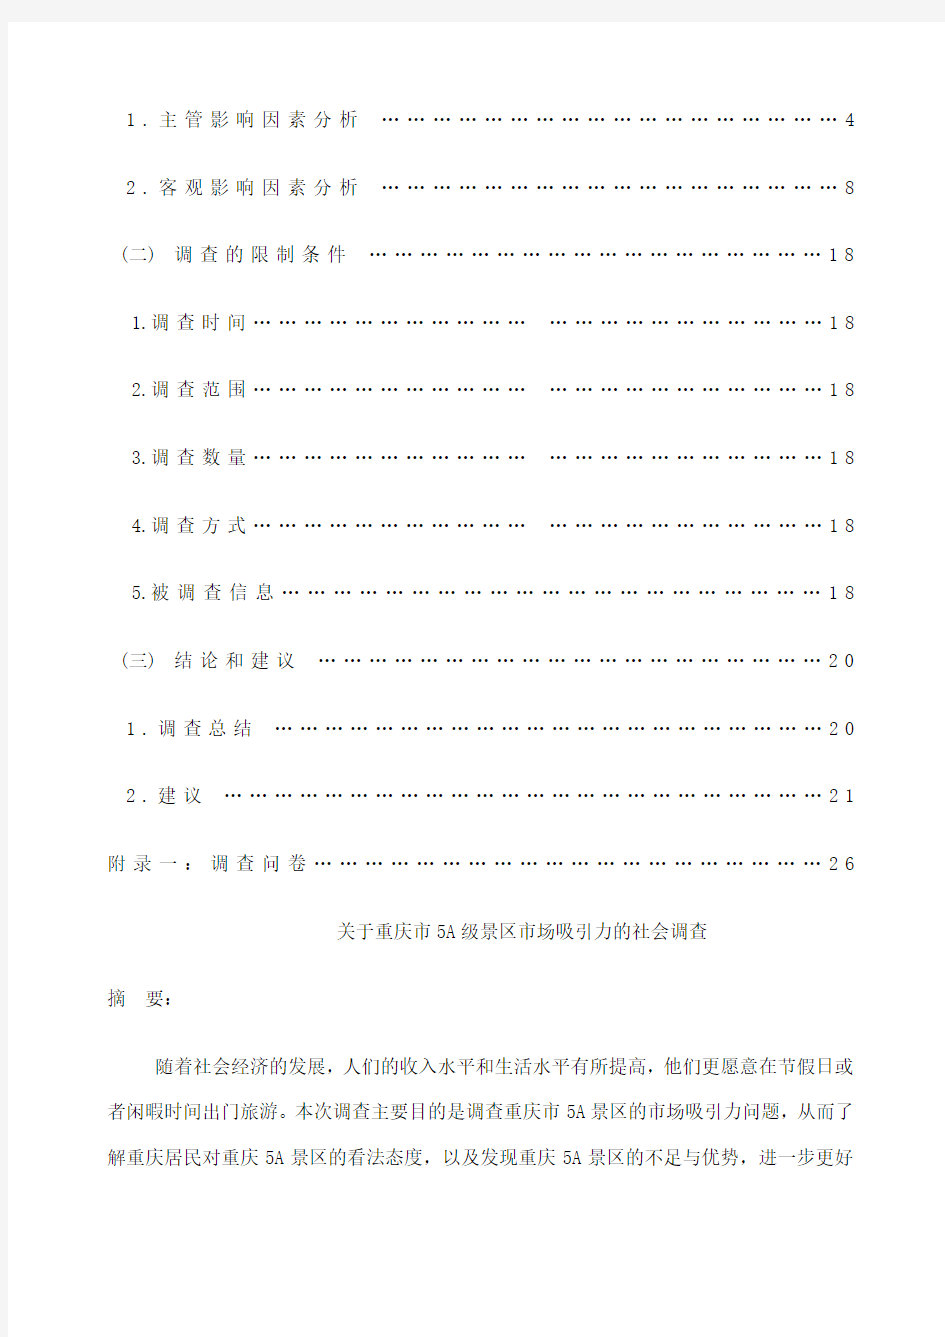 关于重庆市a级景区市场吸引力的社会调查调查报告